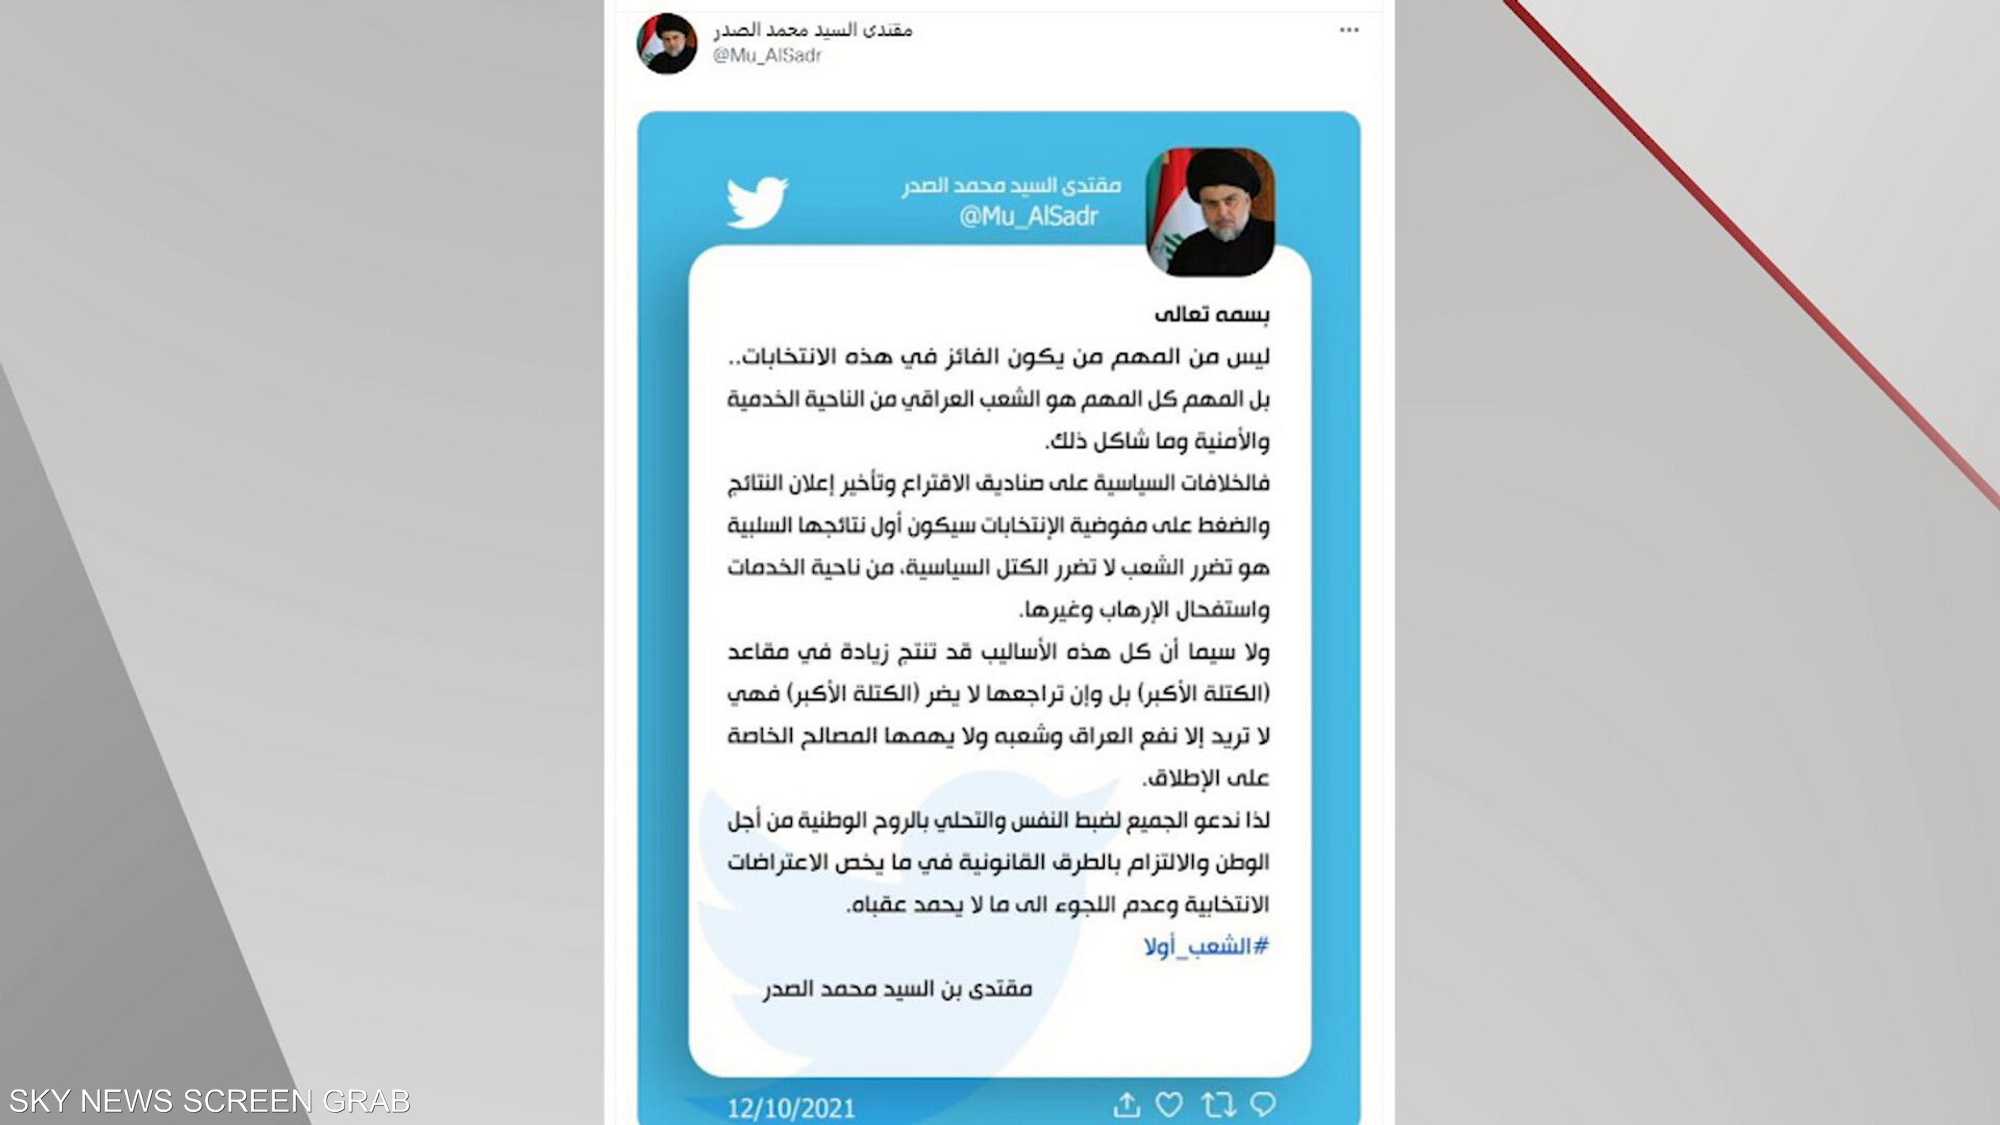 بعد الانتخابات.. الصدر يحذر من "ما لا يحمد عقباه"